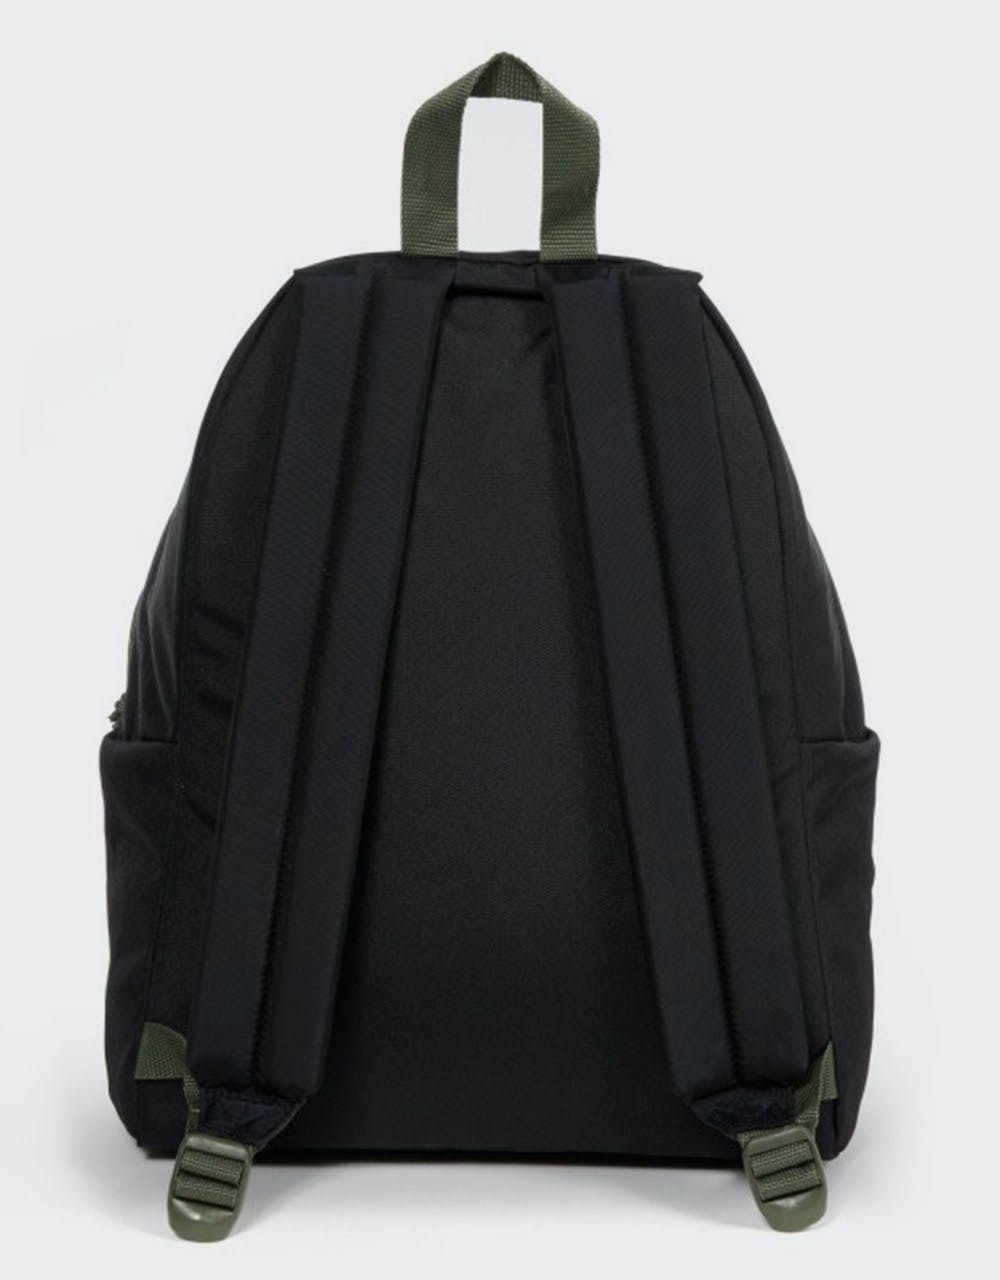 Eastpak Padded Pak'R Backpack - Black/Moss